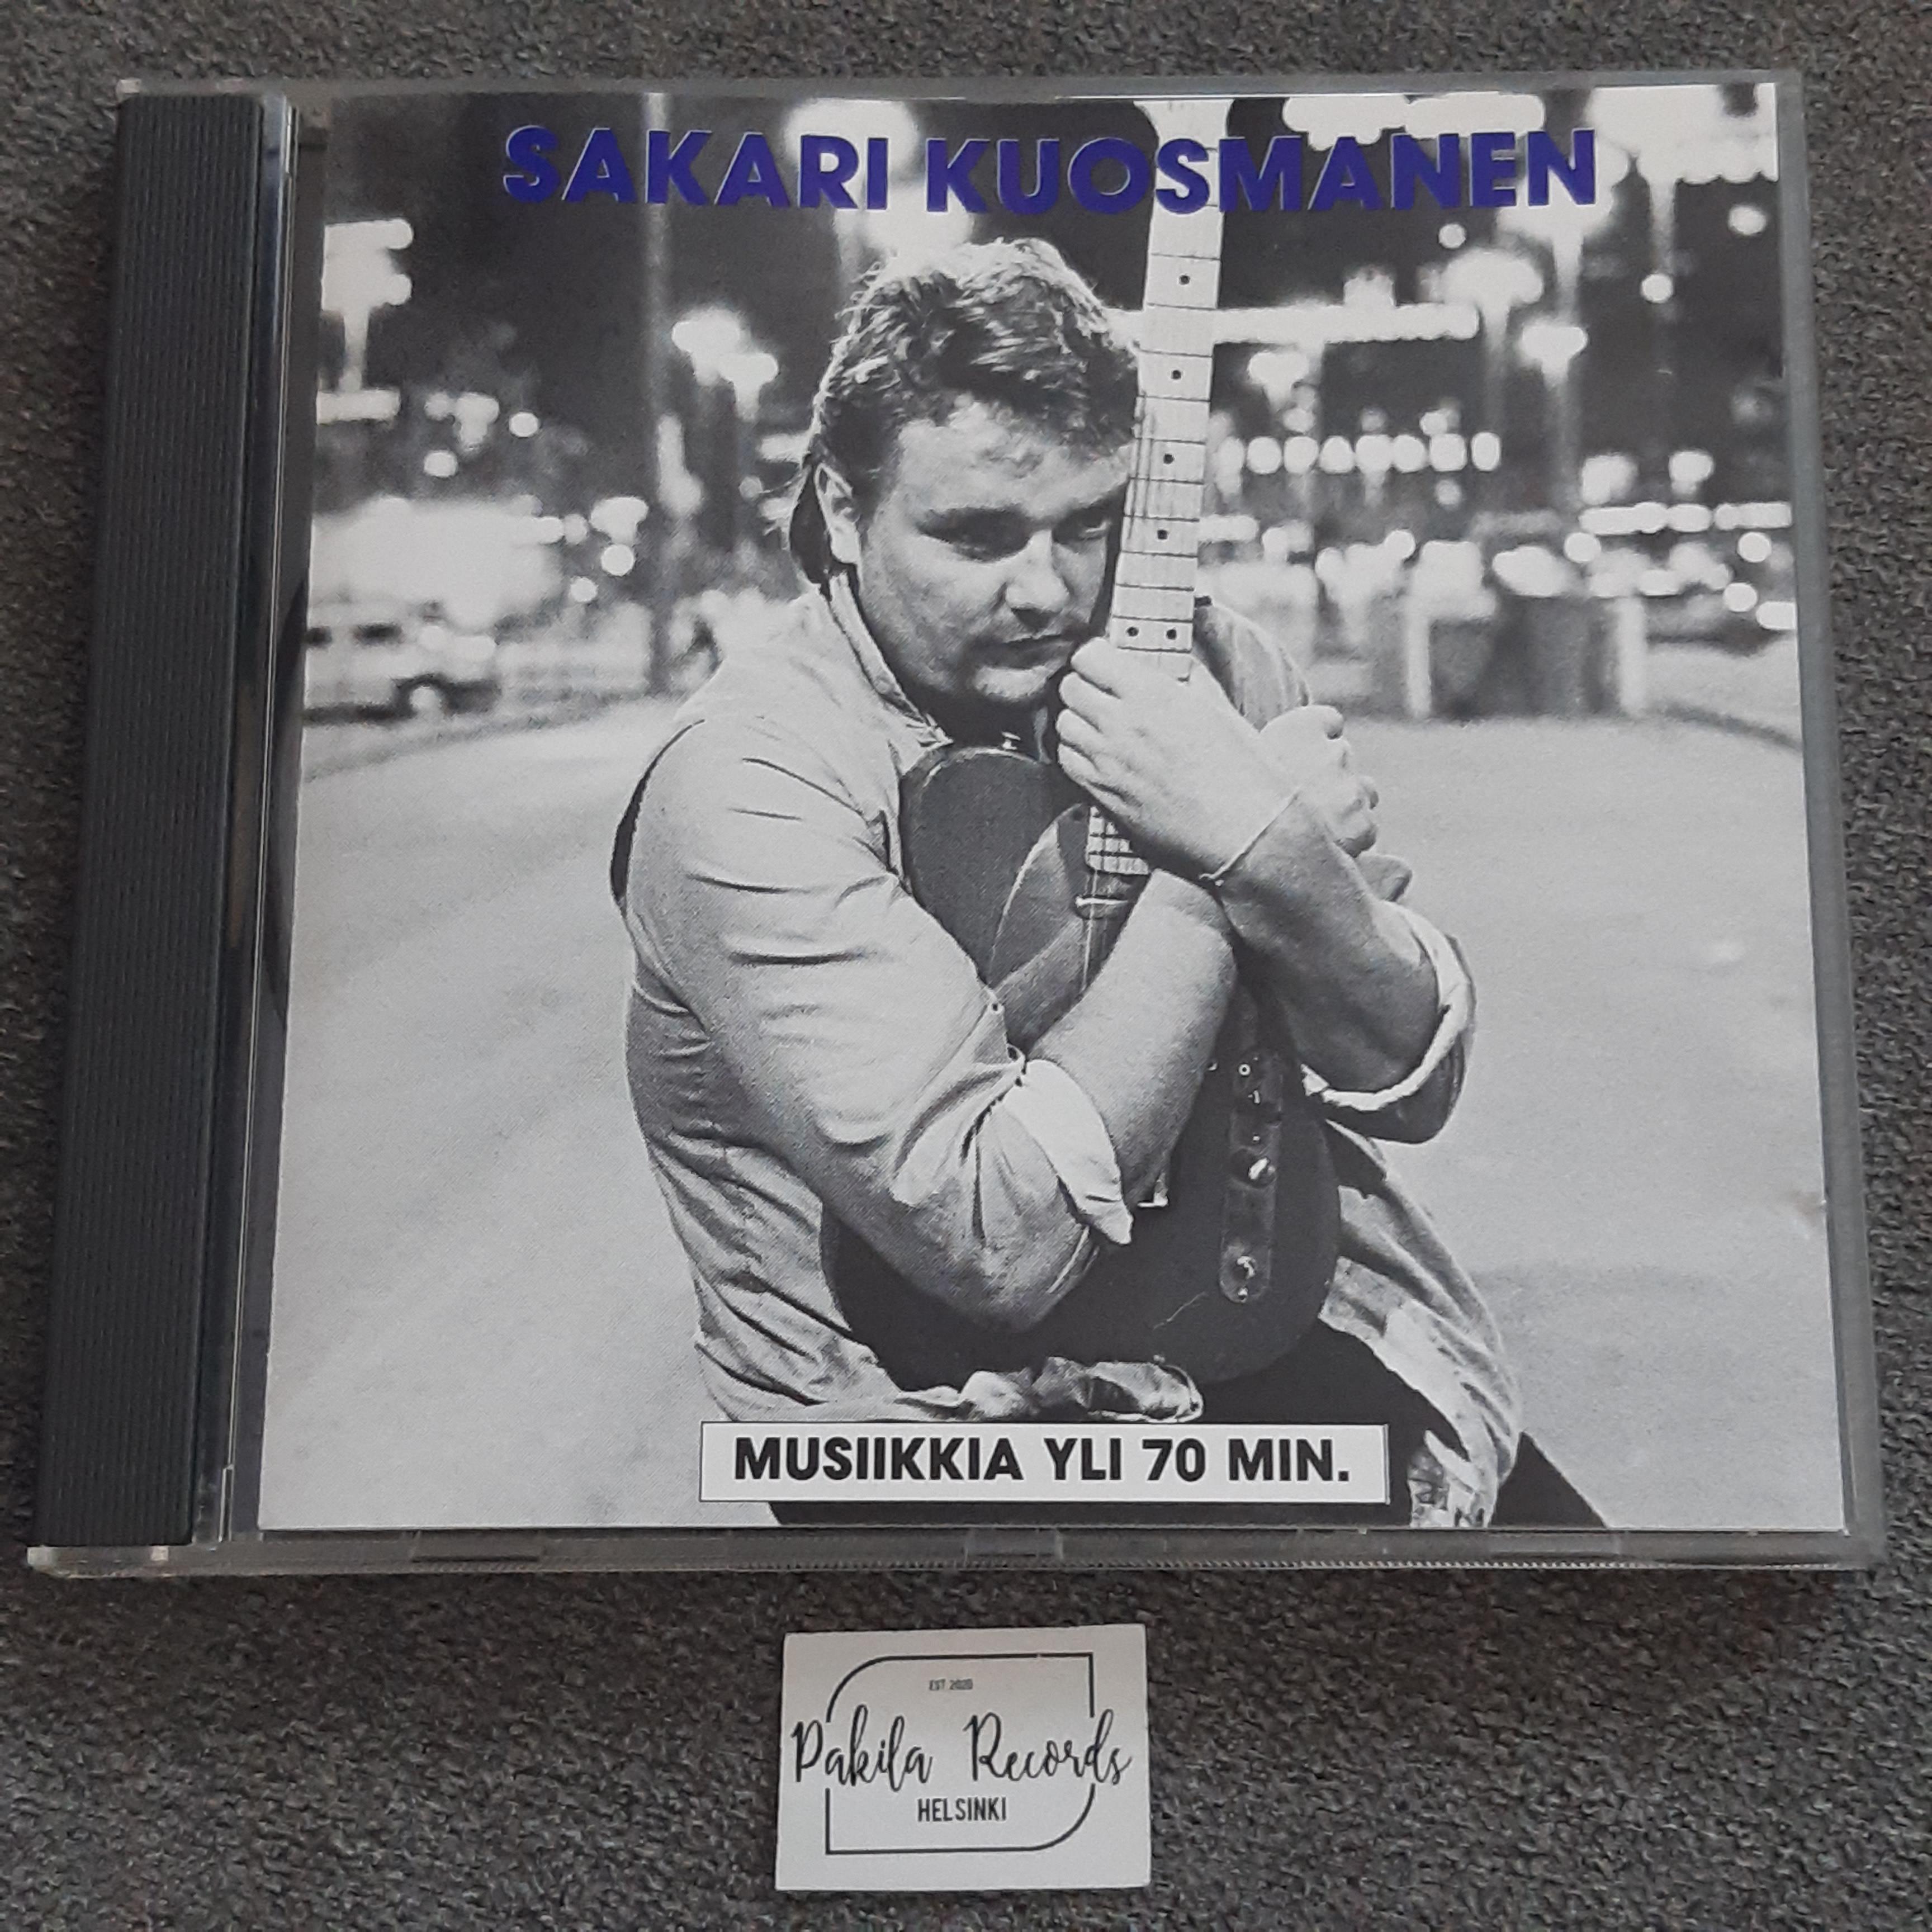 Sakari Kuosmanen - Sakari Kuosmanen - CD (käytetty)